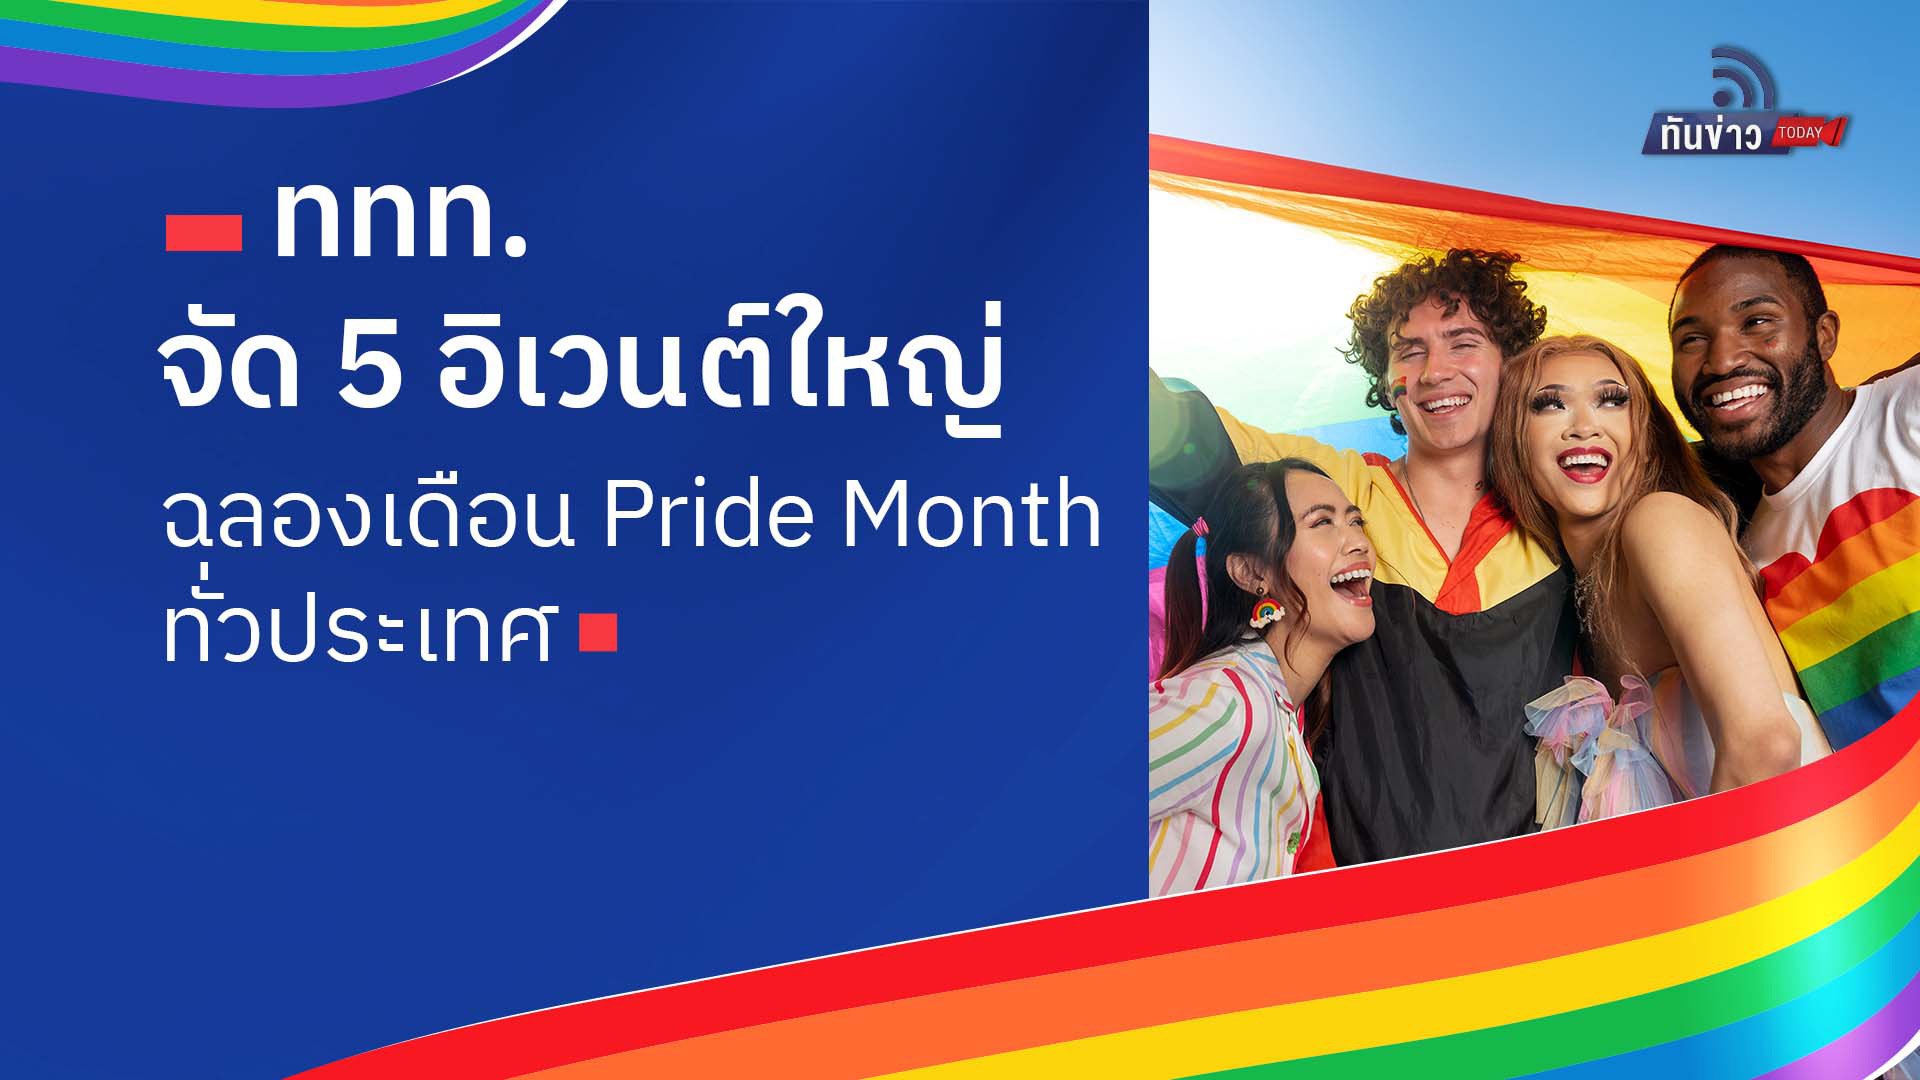 ททท.จัด 5 อิเวนต์ใหญ่ฉลองเดือน Pride Month ทั่วประเทศ